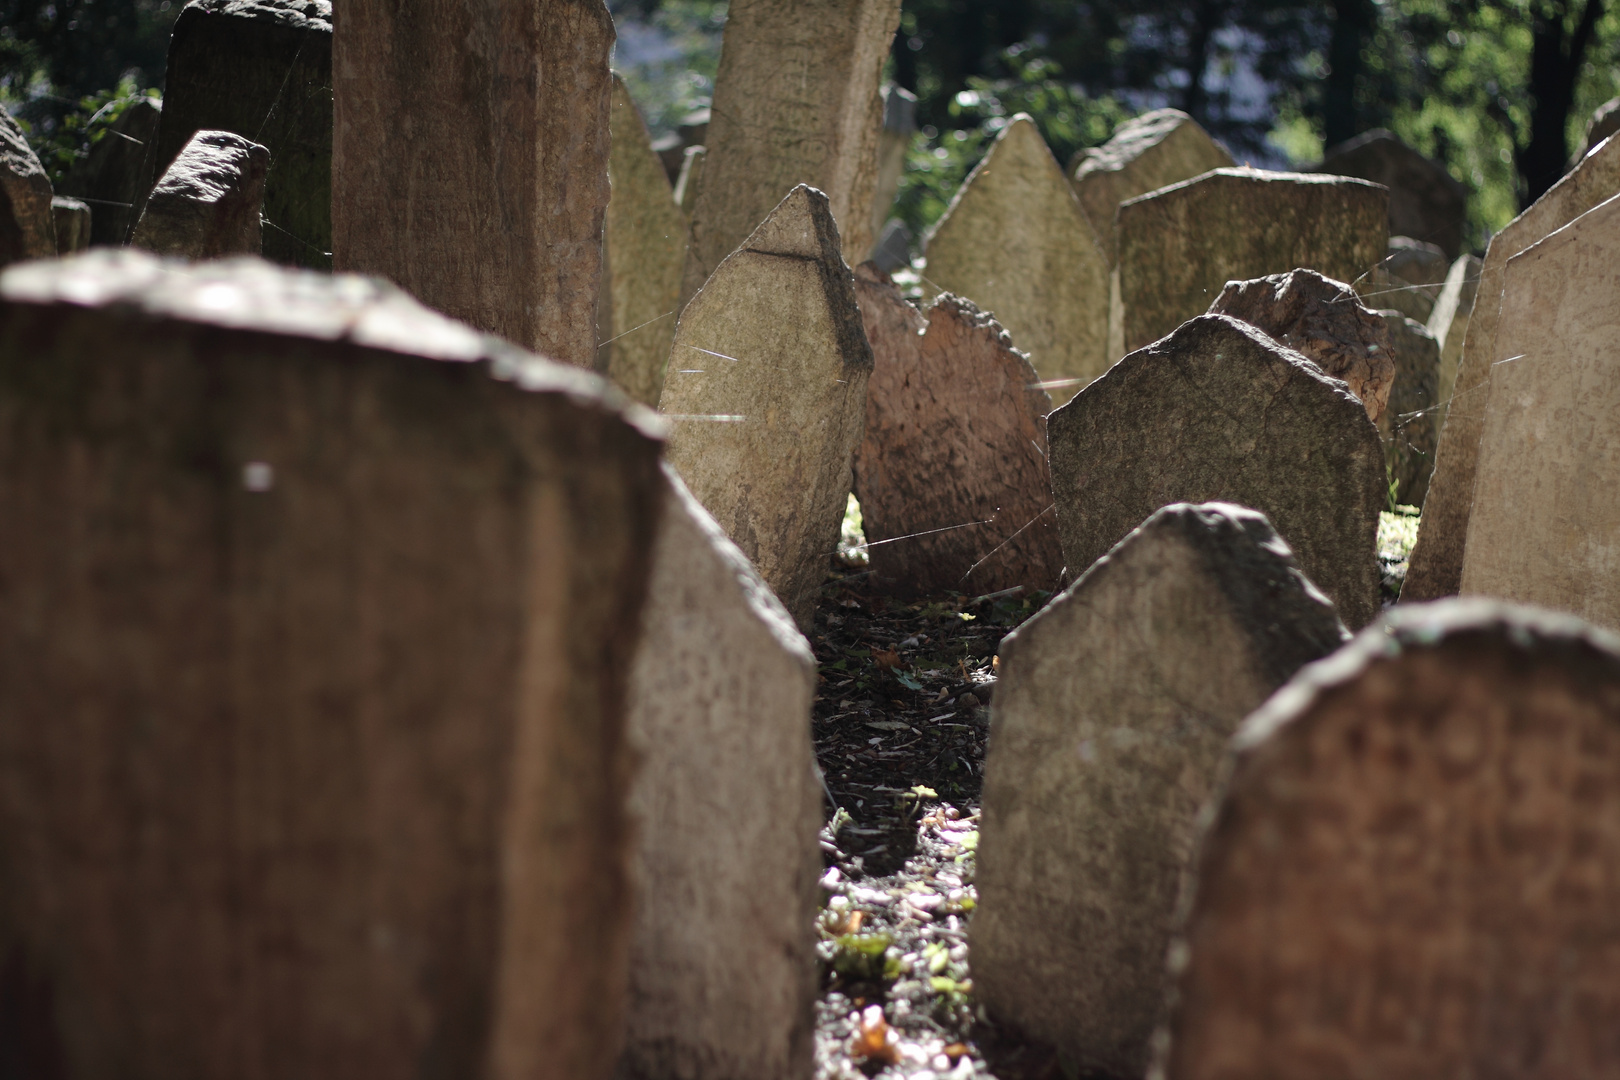 Alter Jüdischer Friedhof in Prag